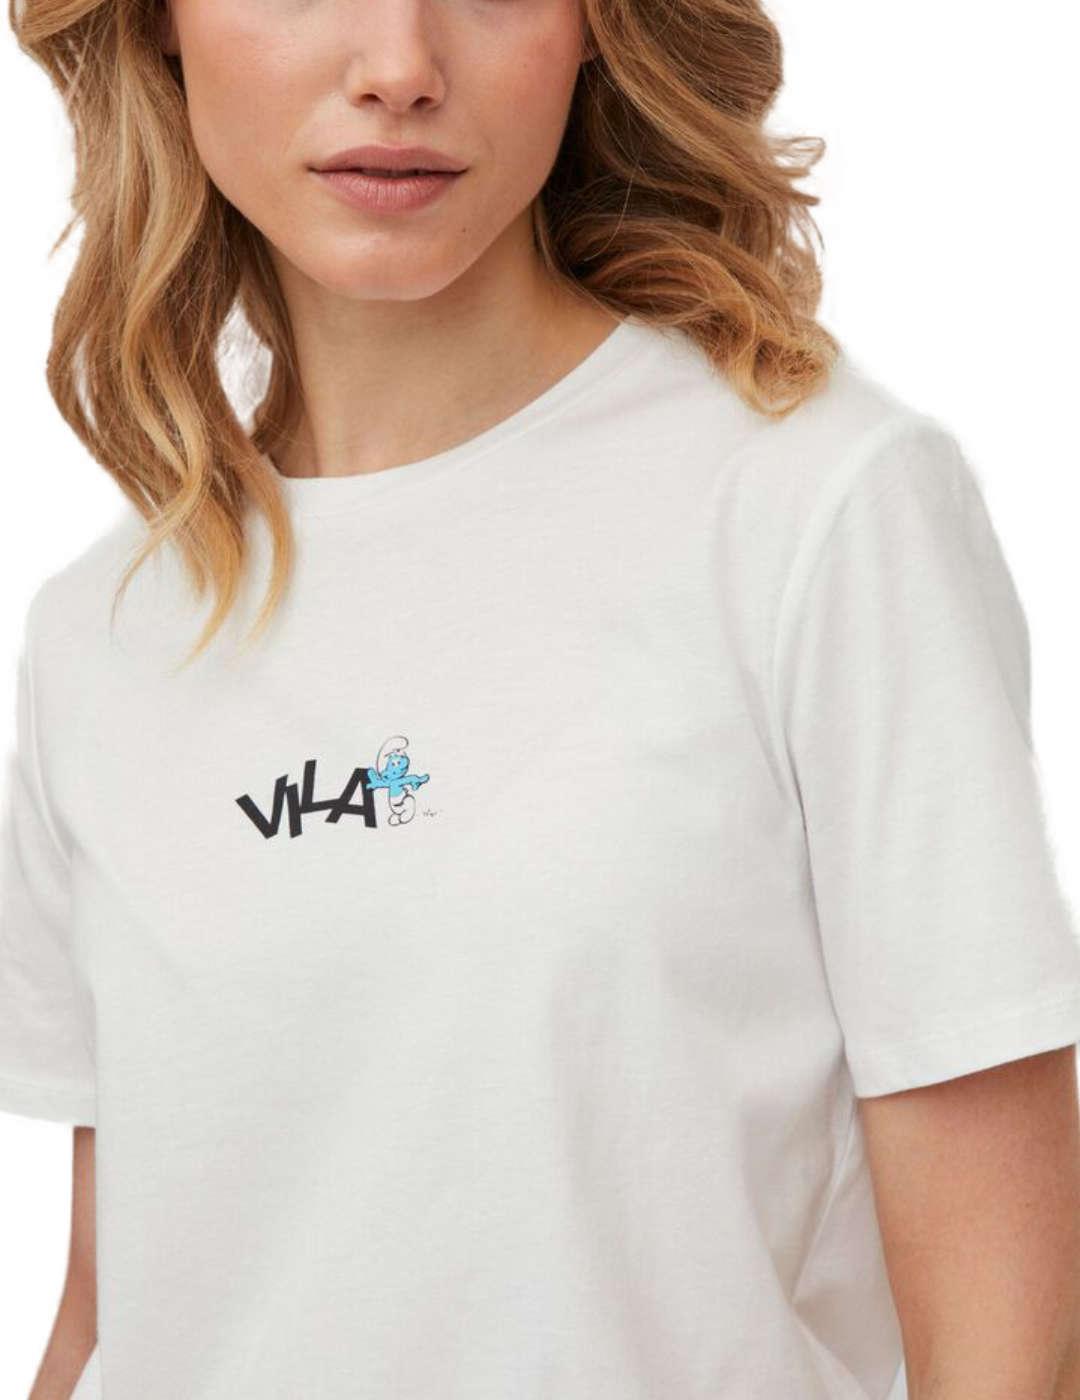 Camiseta Vila Smurfy blanca para mujer -b